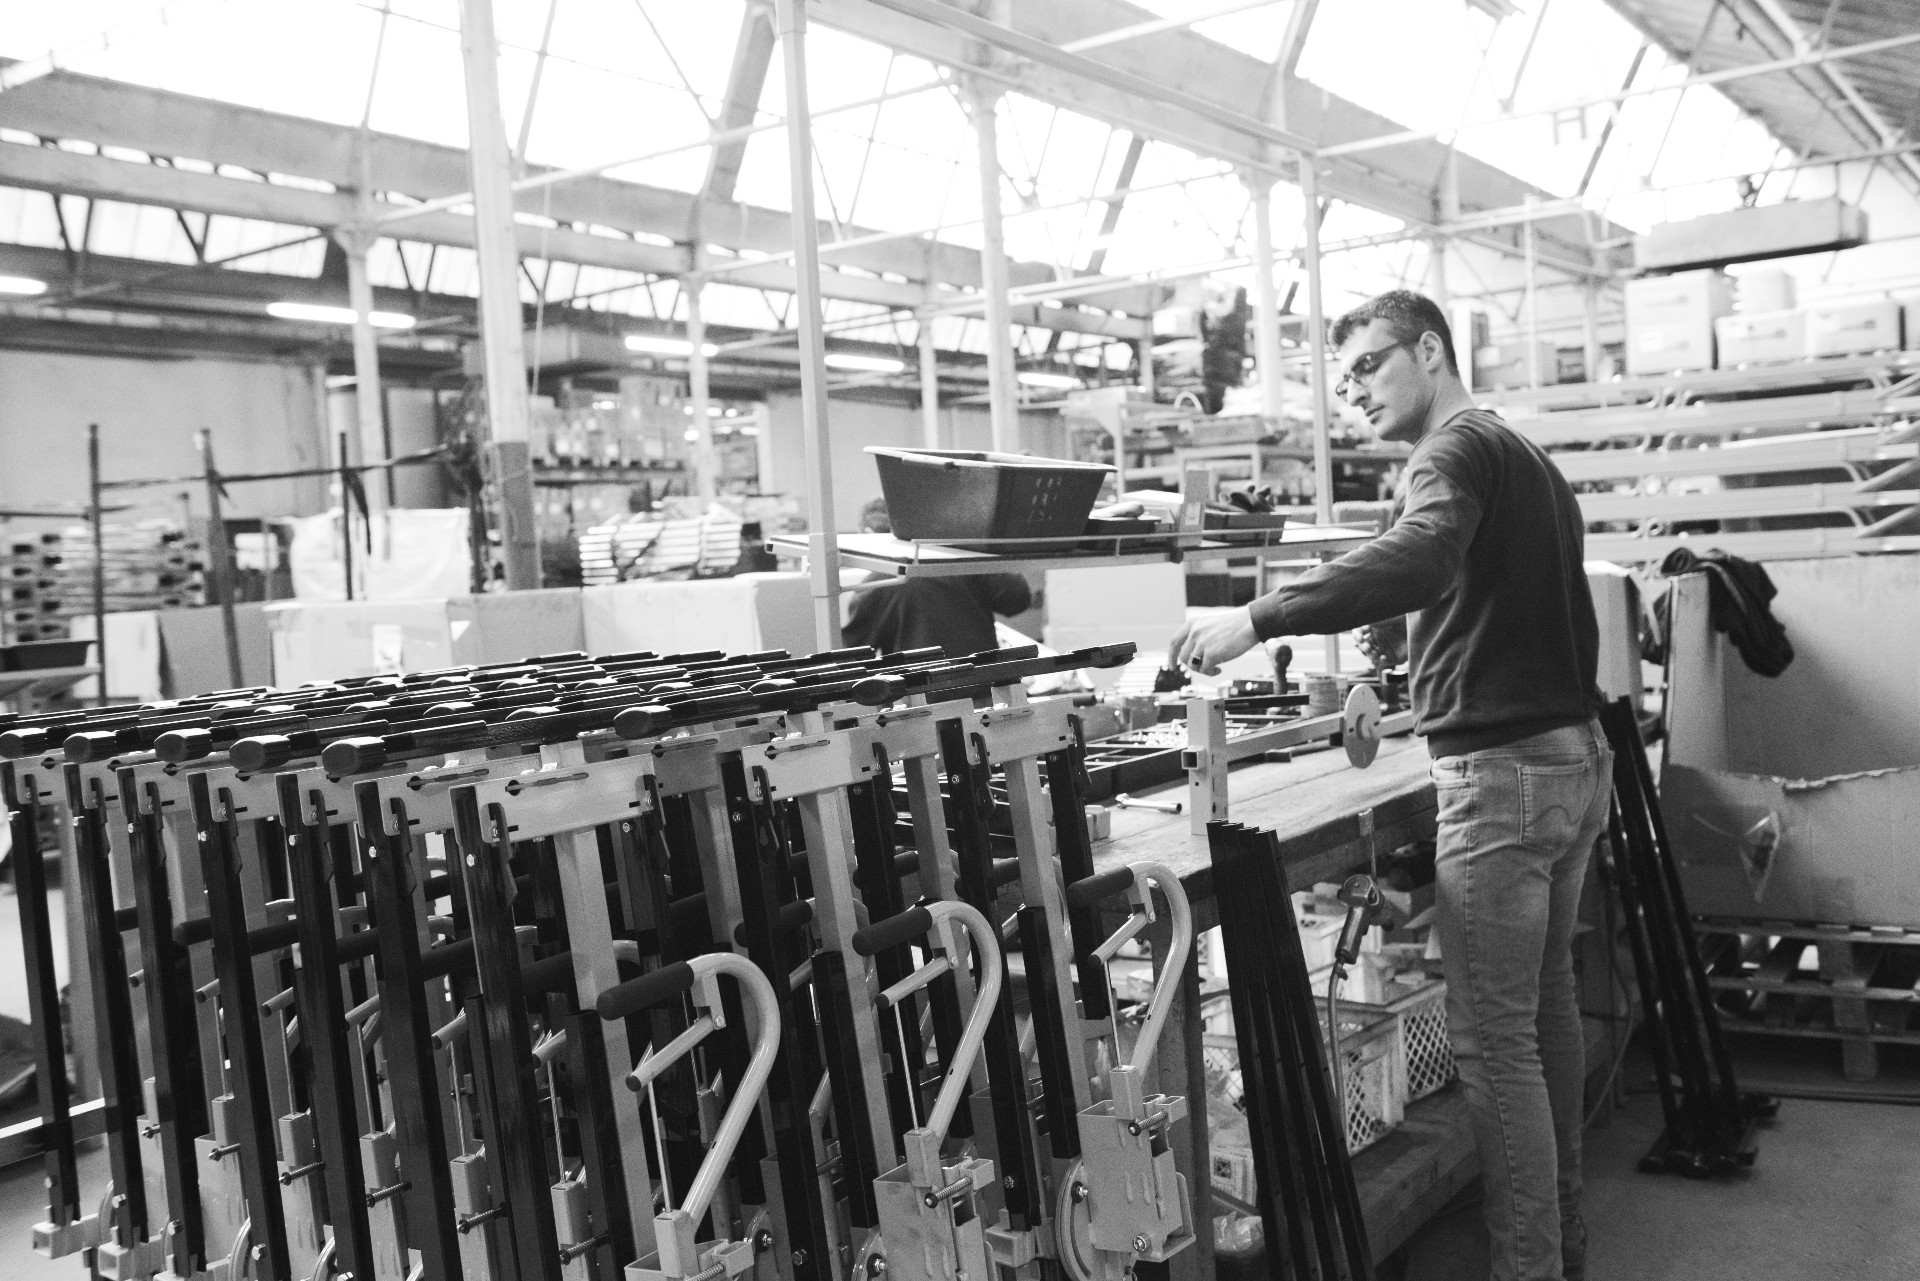 L'usine Mondelin d'Ambierle maîtrise toutes les techniques, travaille toutes les épaisseurs et formes pour la fabrication d'outils professionnels de qualité.